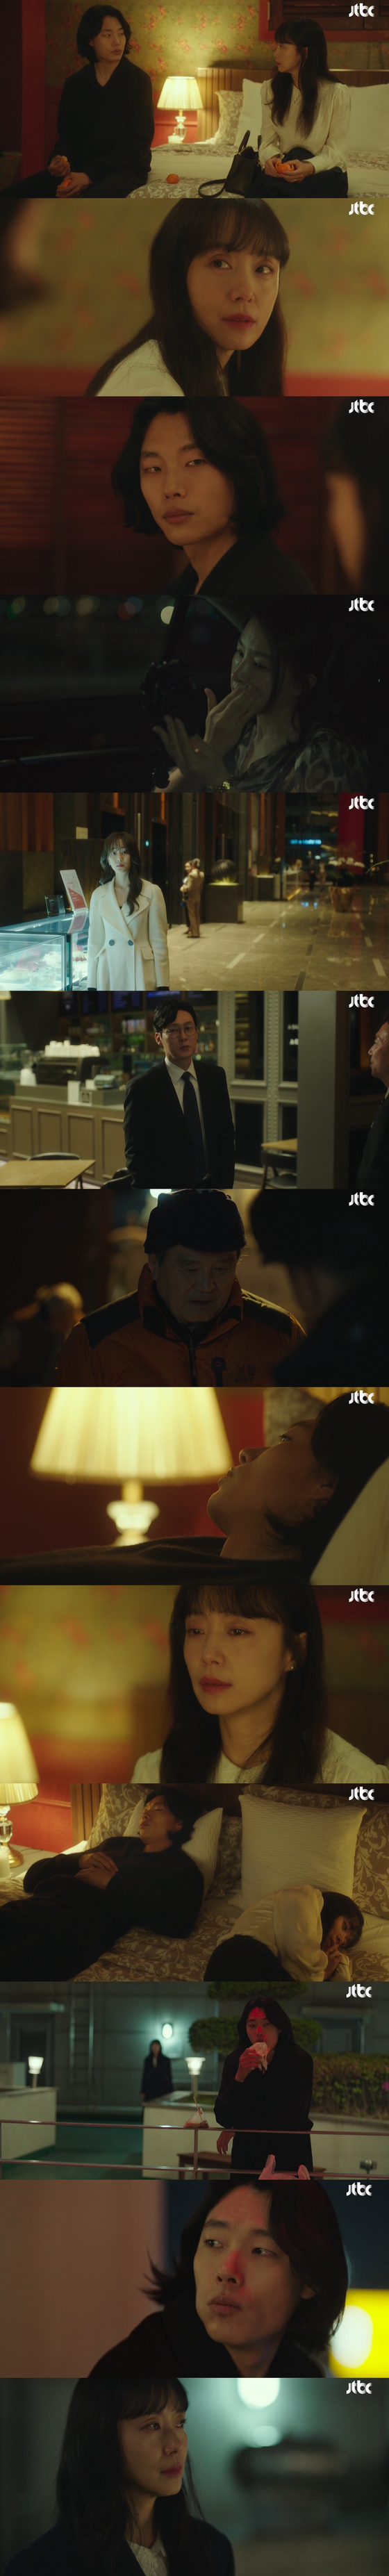 25일 방송된 JTBC 드라마 '인간실격' 캡처 화면